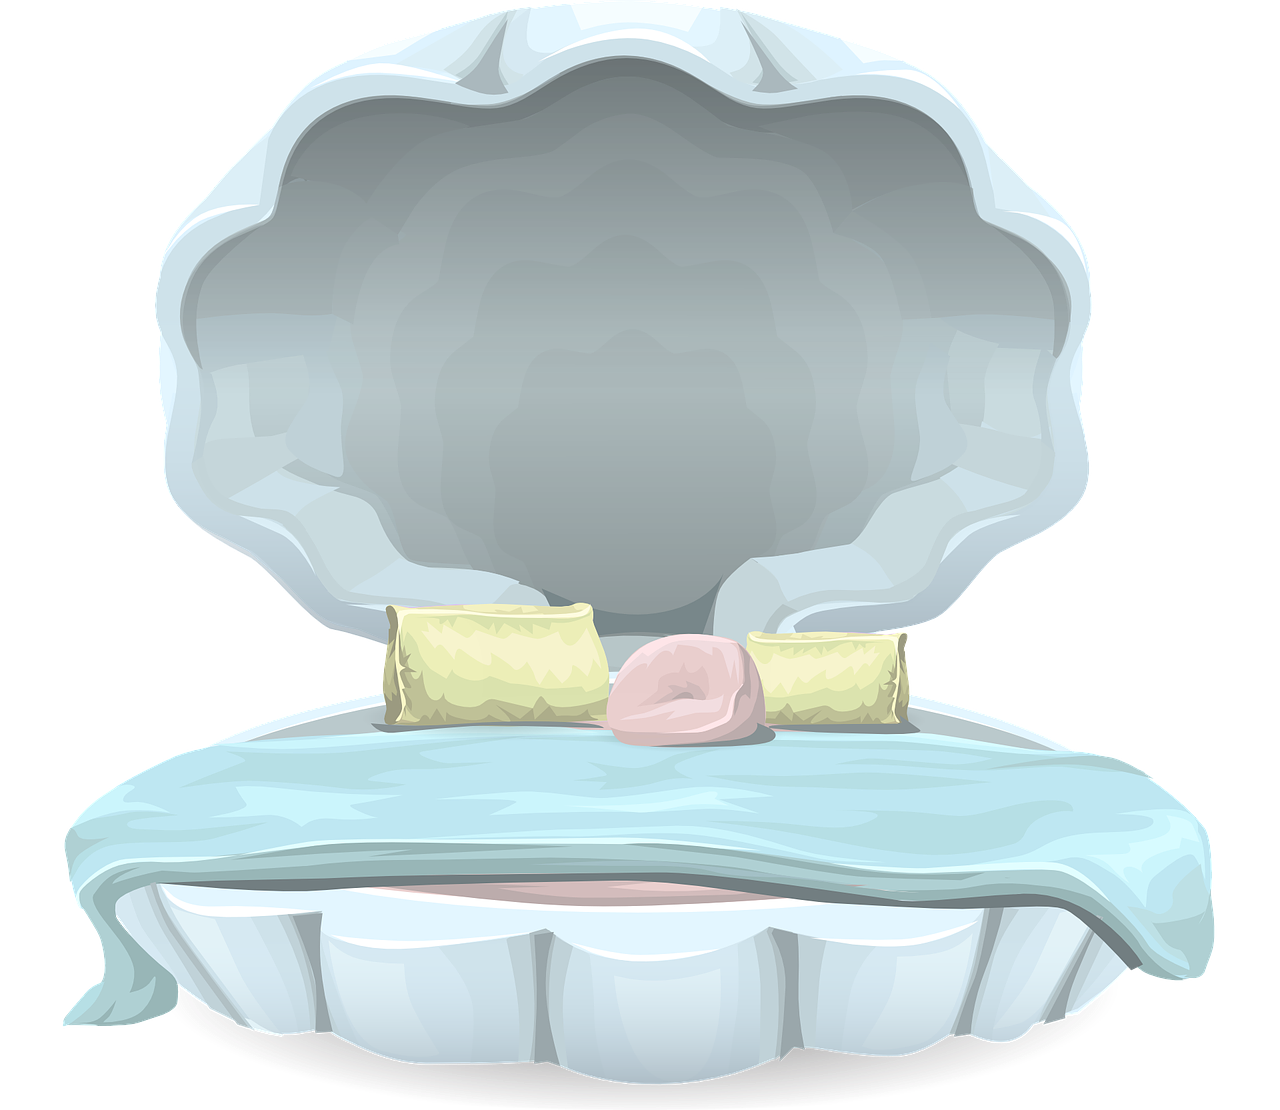 Кровать в виде ракушки. Кровать иллюстрация. Кровать Ракушка детская. Кровать на прозрачном фоне. Дом сна мебель